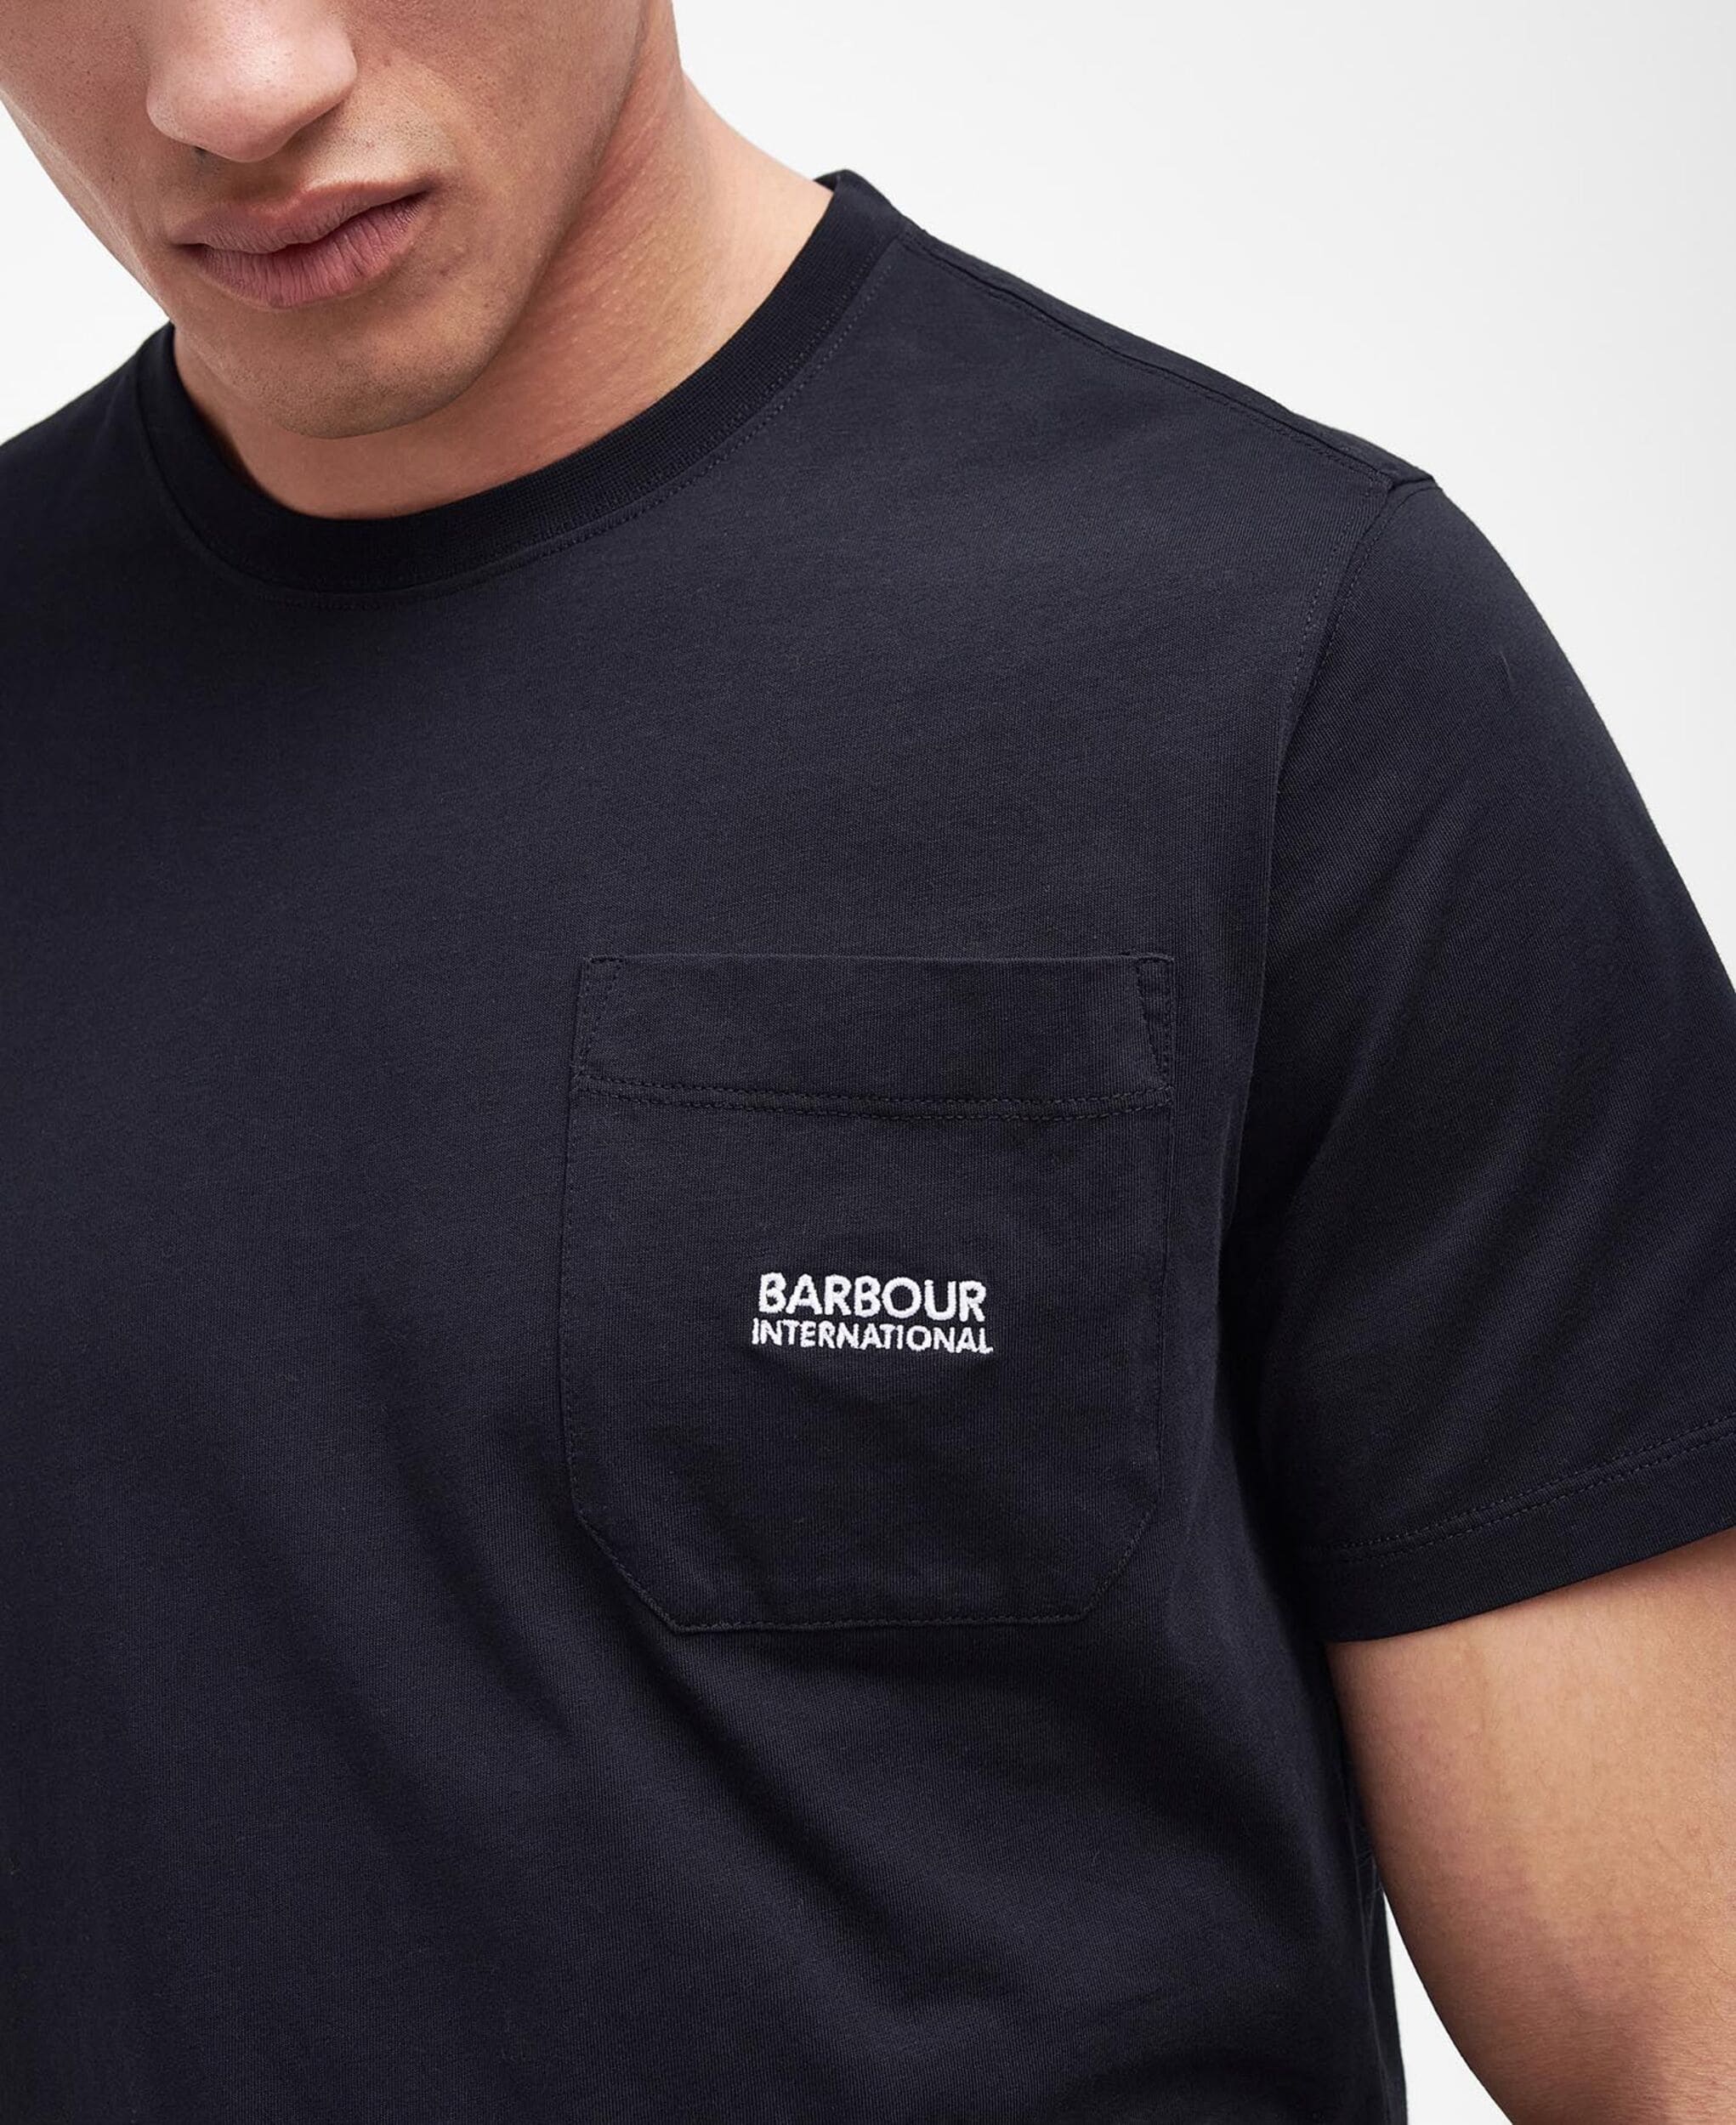 Barbour t-shirt à poche Radok black pour homme porté poche